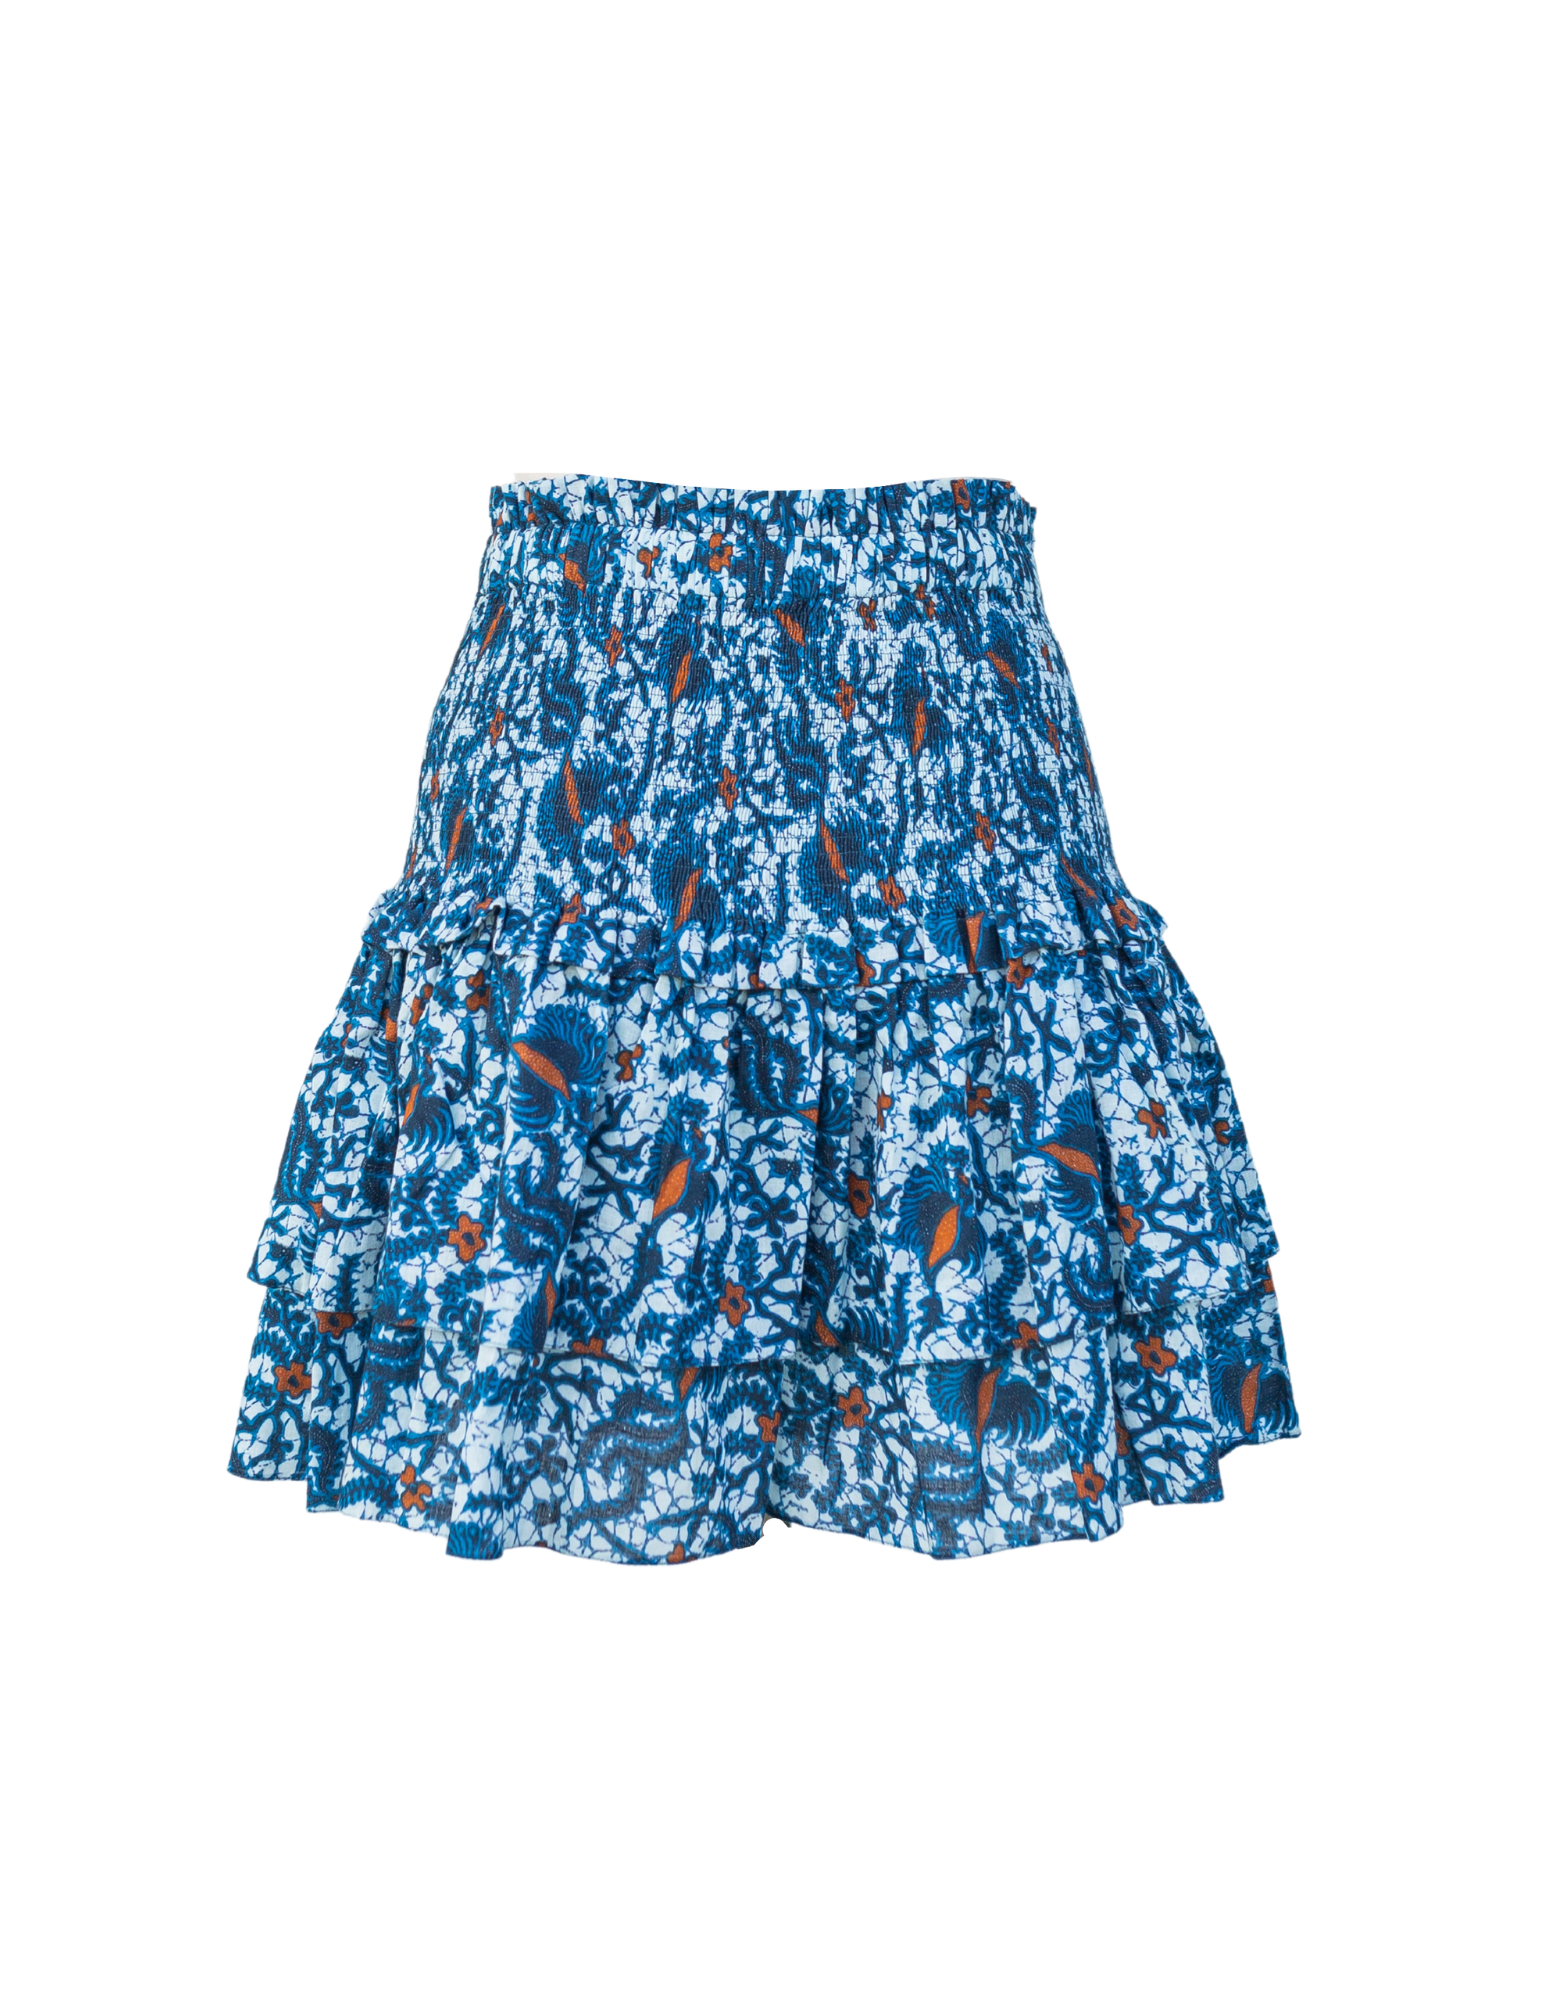 Ibiza Smocked Skirt - Blue